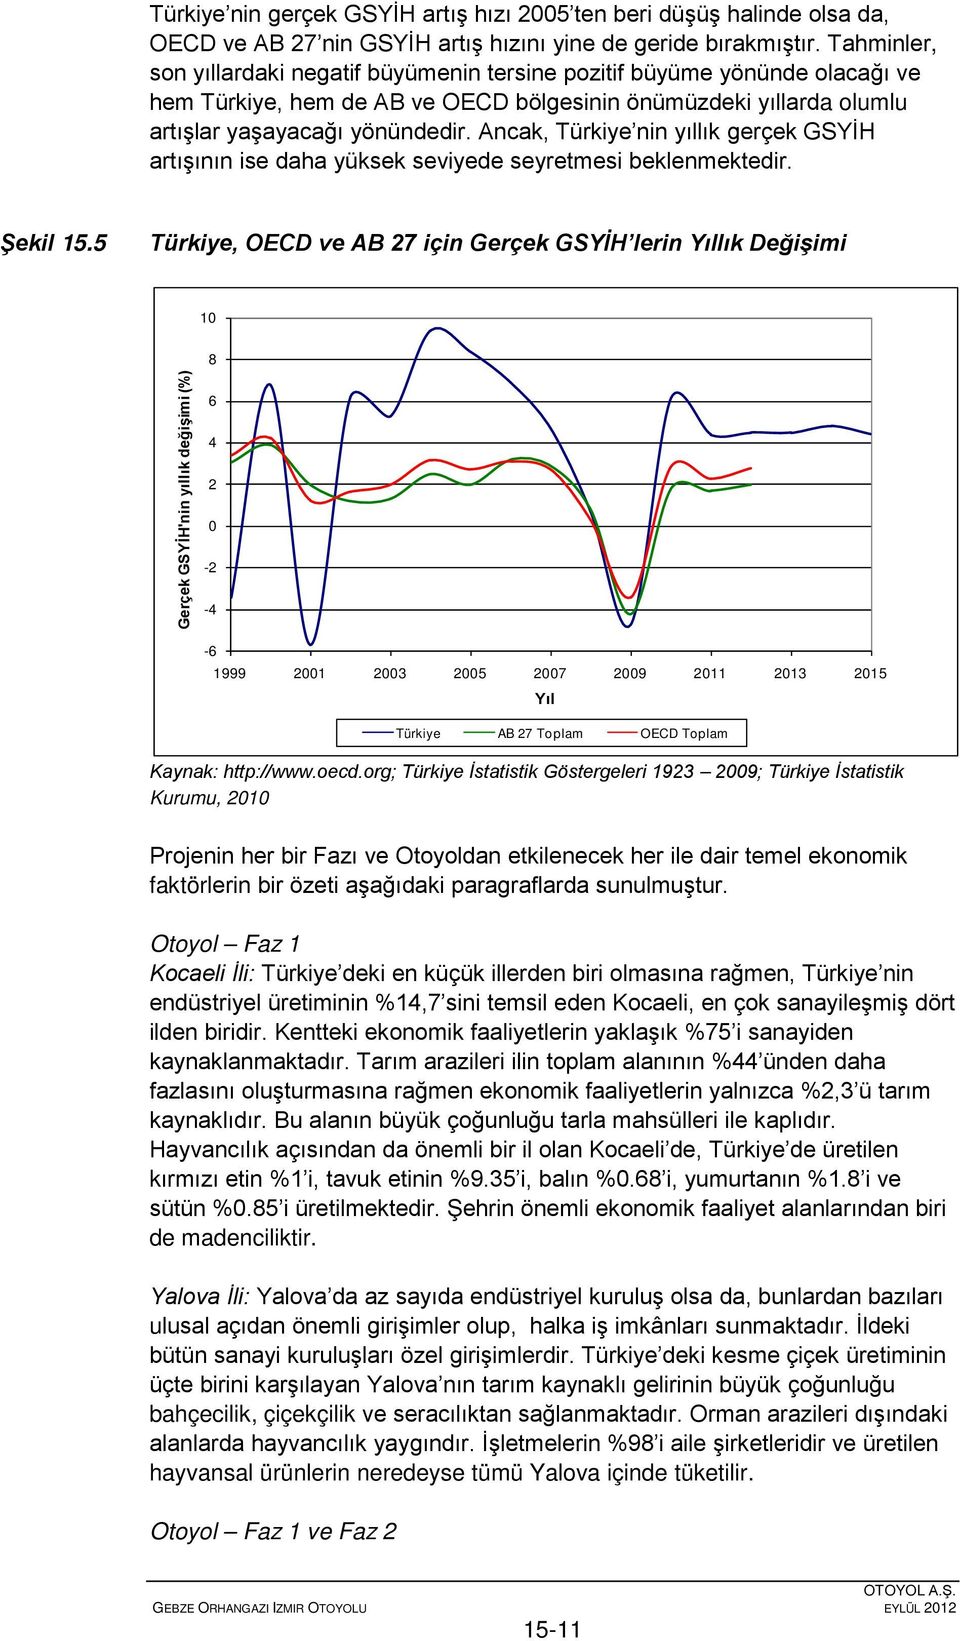 Ancak, Türkiye nin yıllık gerçek GSYİH artışının ise daha yüksek seviyede seyretmesi beklenmektedir. Şekil 15.